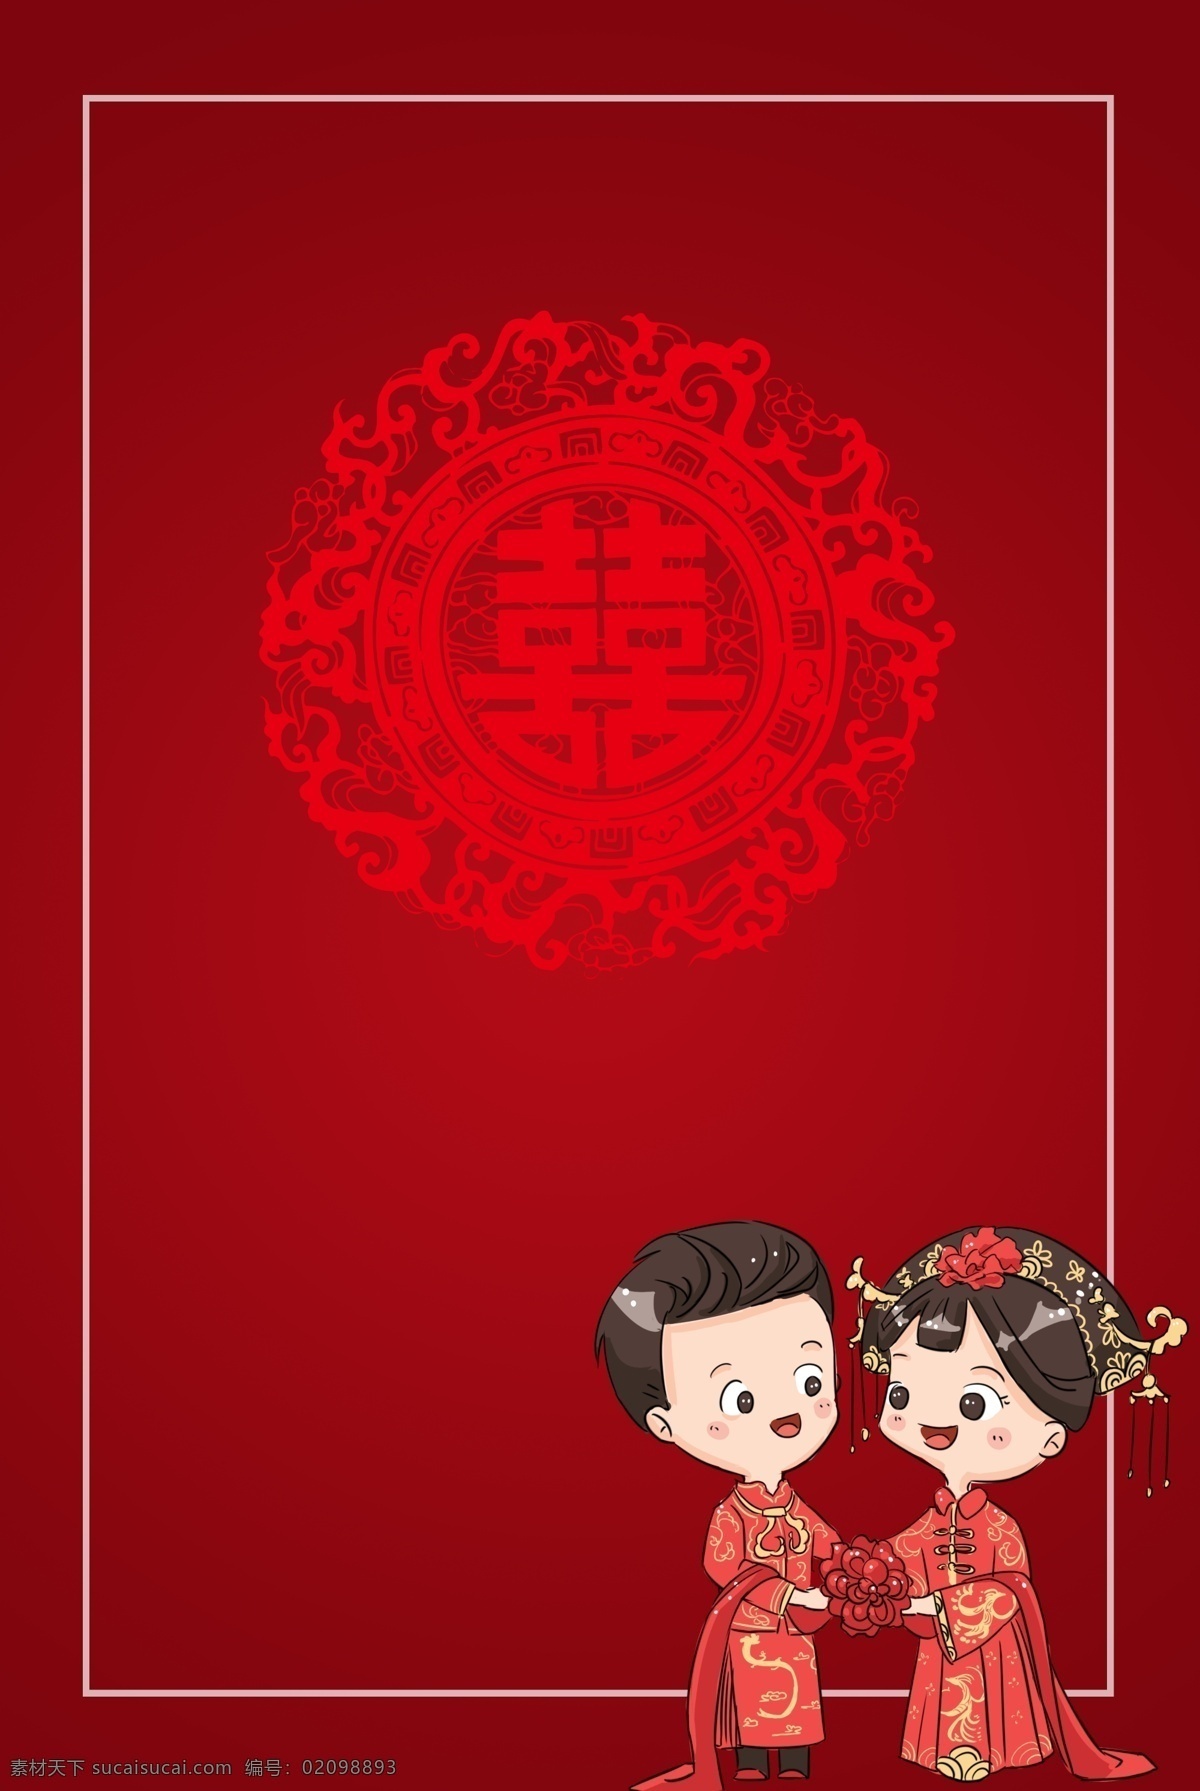 红色 喜庆 复古 中式 婚礼 海报 背景 中式婚礼 我们结婚了 永结同心 结婚 婚庆 婚礼邀请函 结婚签到处 中式婚礼海报